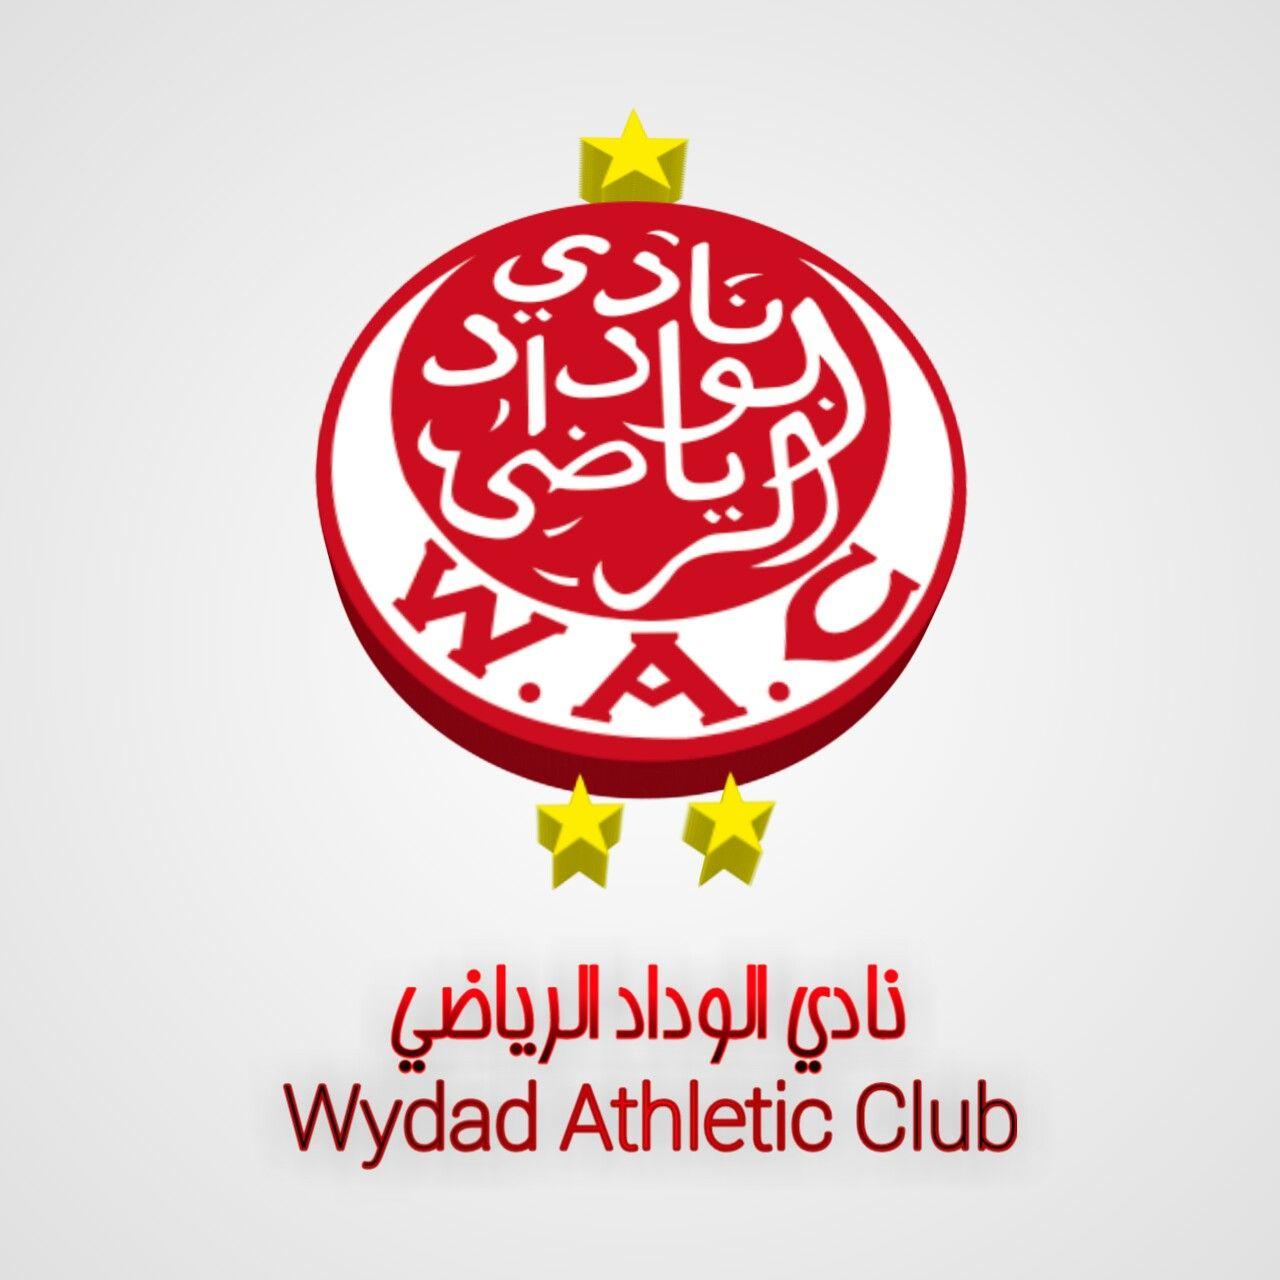 نادي الوداد الرياضي Athletic Club. Abdelmalek